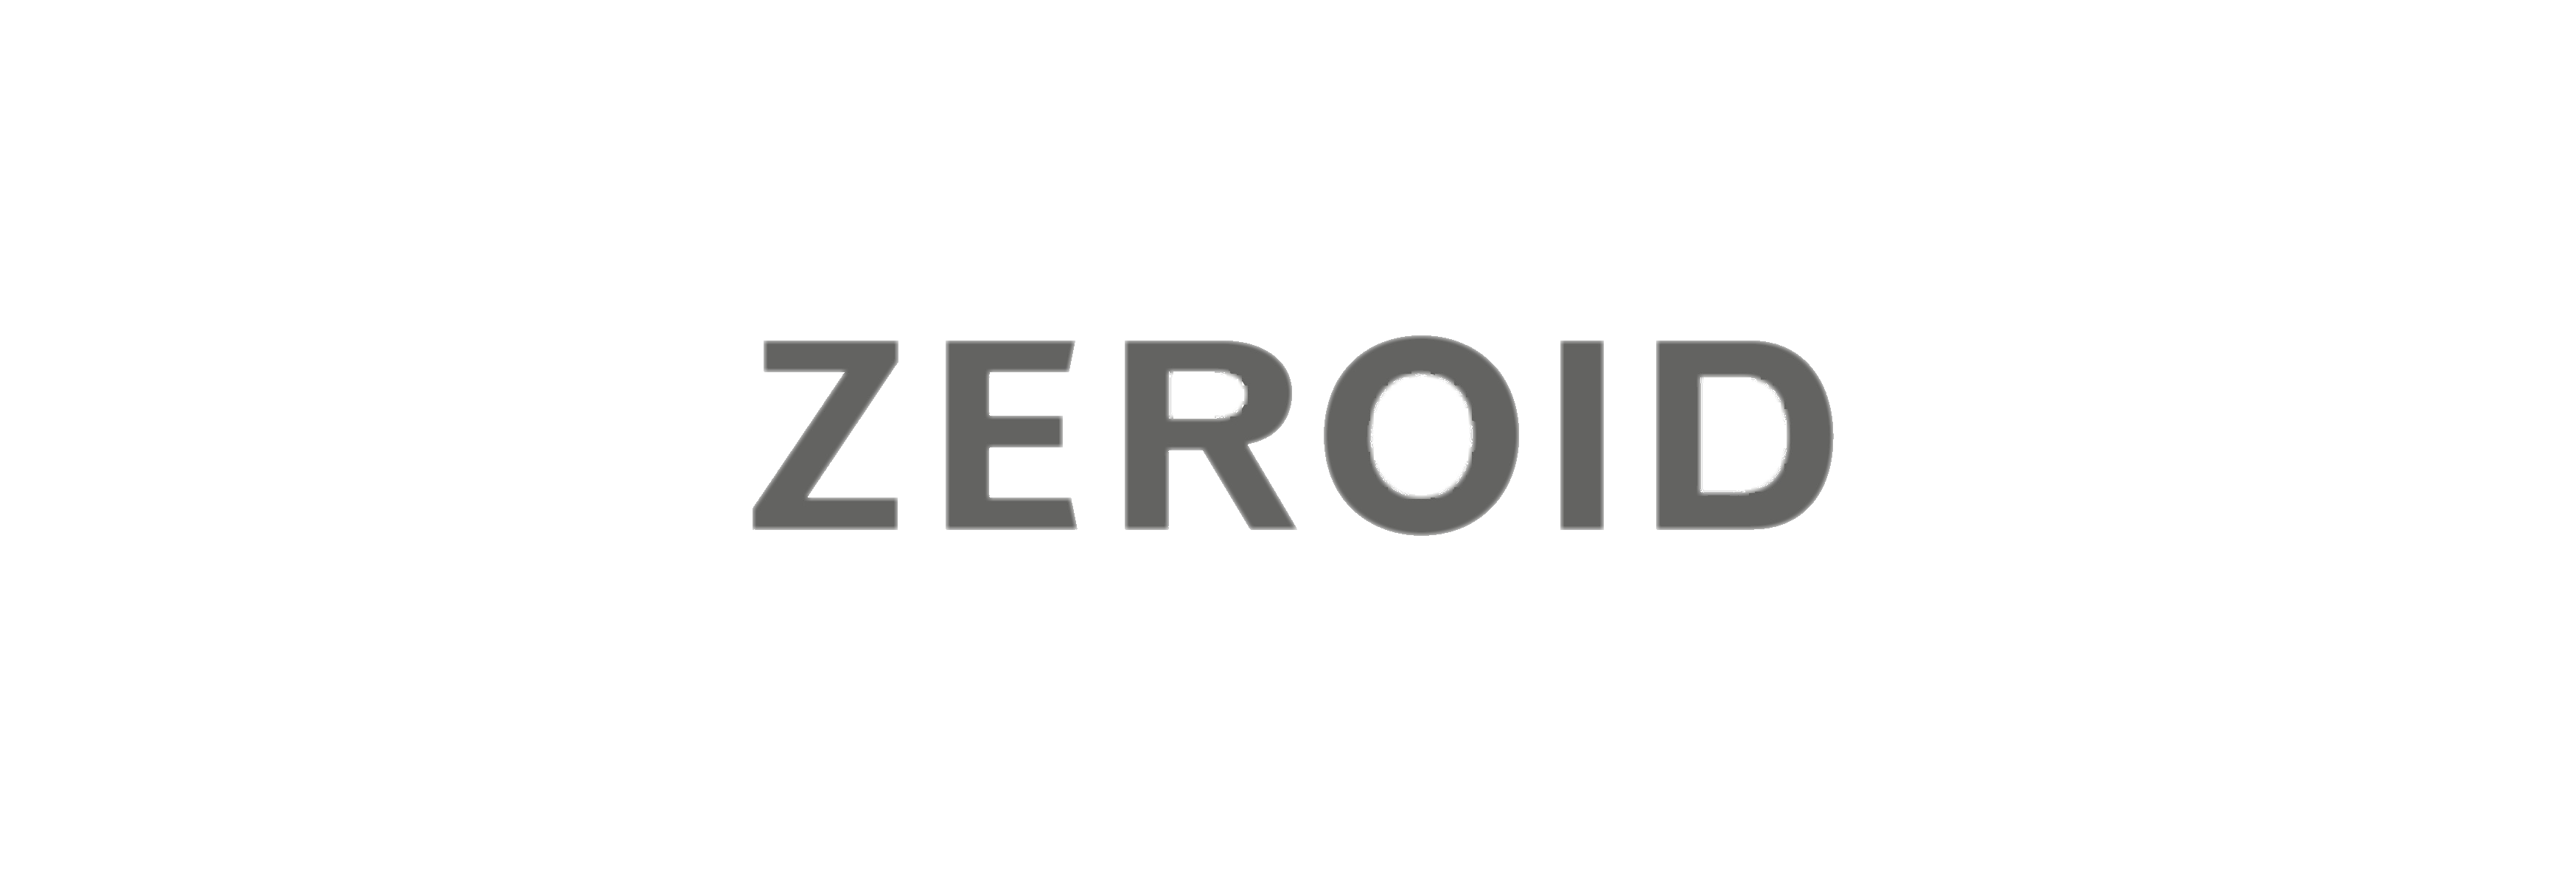 ZEROID